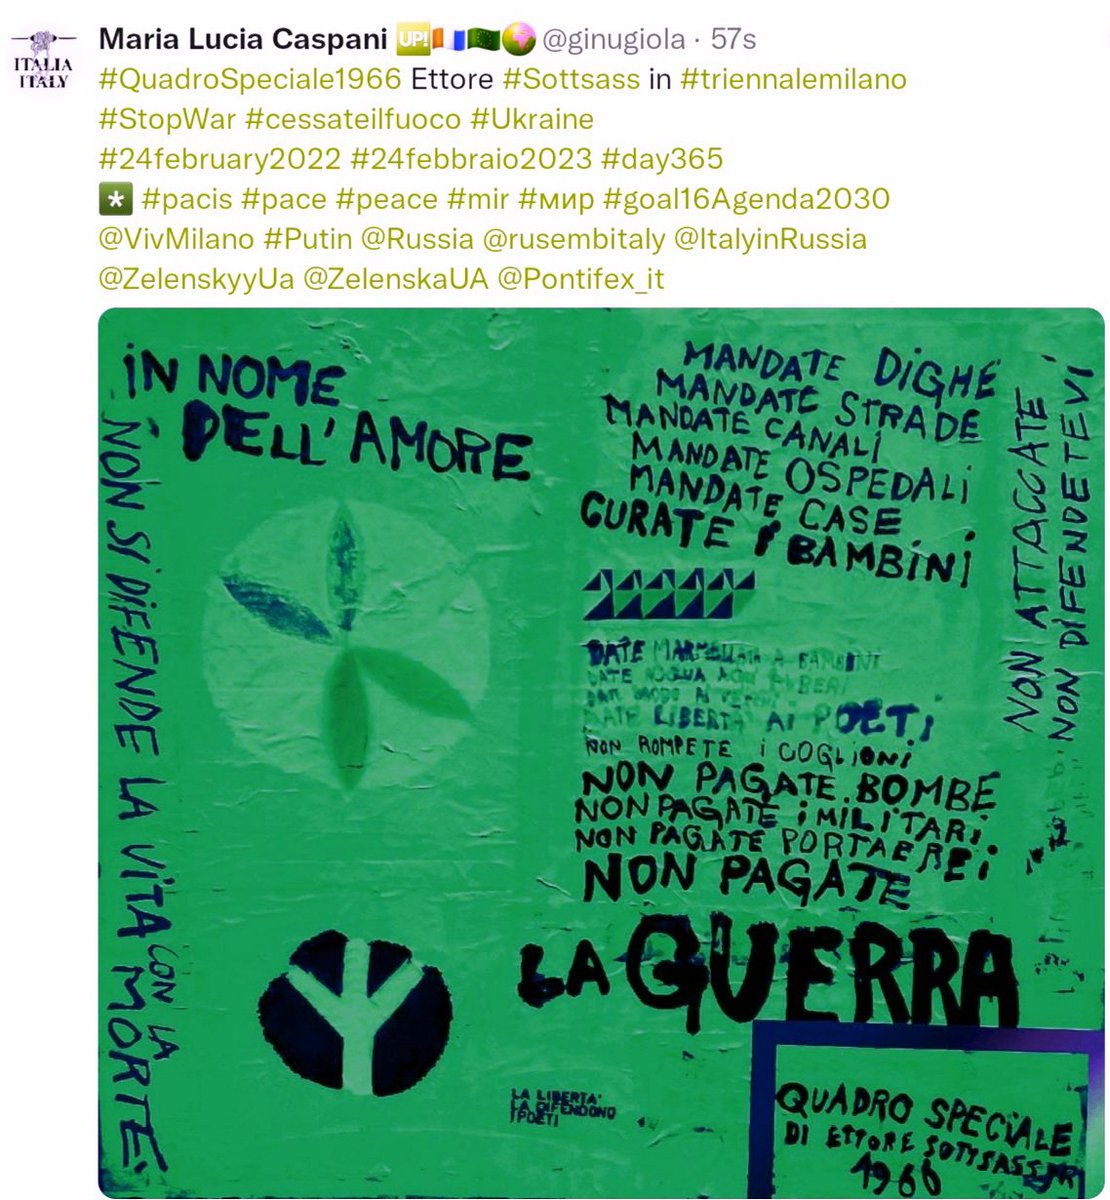 #QuadroSpeciale1966 Ettore #Sottsass 
già in mostra #triennalemi 
#StopWar #cessateilfuoco
#8May #8maggio2024
*️⃣ #pacis #mir #paix
#goal16 #Agenda2030 @UN
#PremioPaceCentroArteSeverMI 
#Culture4Peace #SoloPace 
@VivMilano @ignaziocassis @RobertoBolle
@zazoomblog @AgneseFiducia